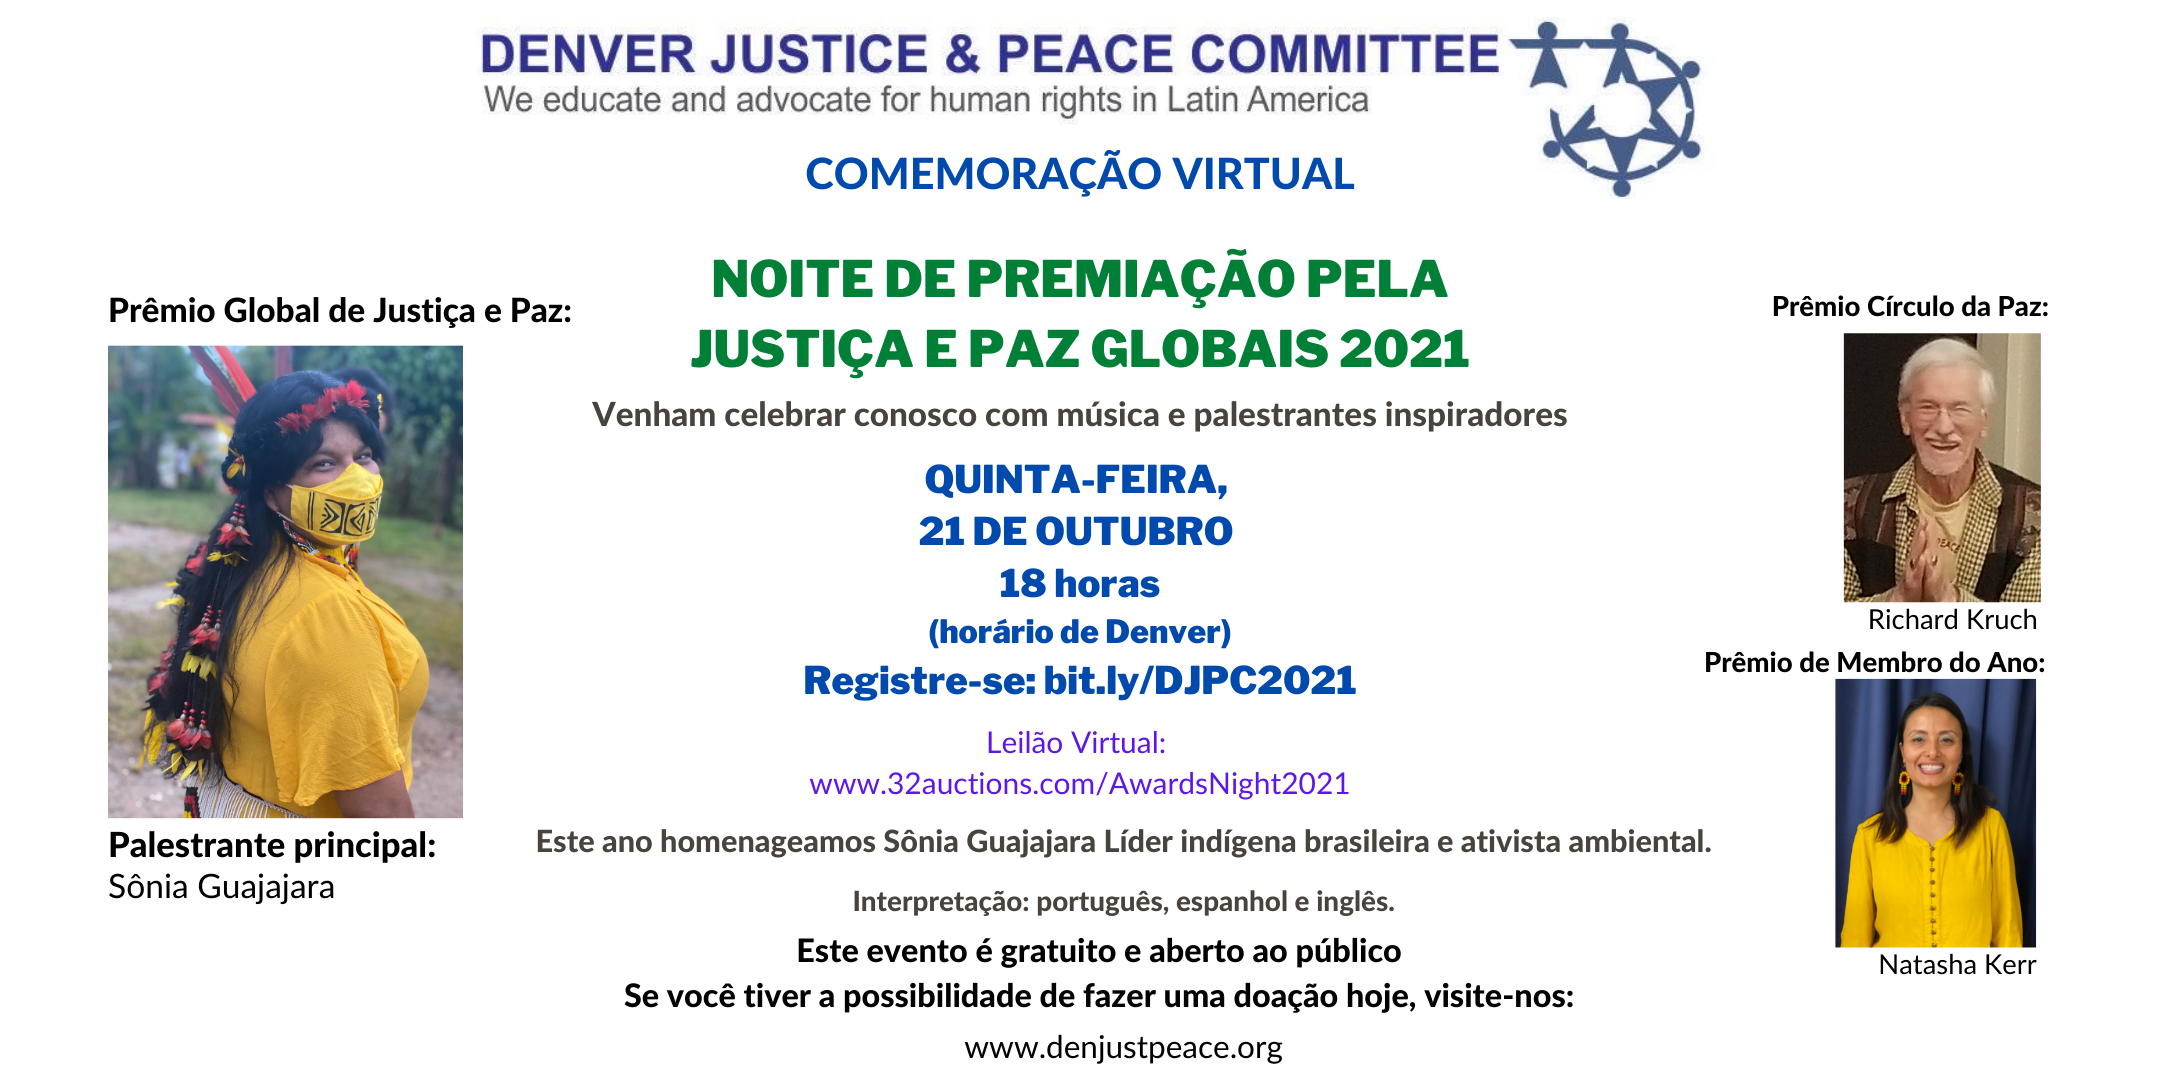 Convite: Noite de Premiação pela Justiça e Paz Globais 2021. Quinta-feira, 21 de outubro, às 18:00.